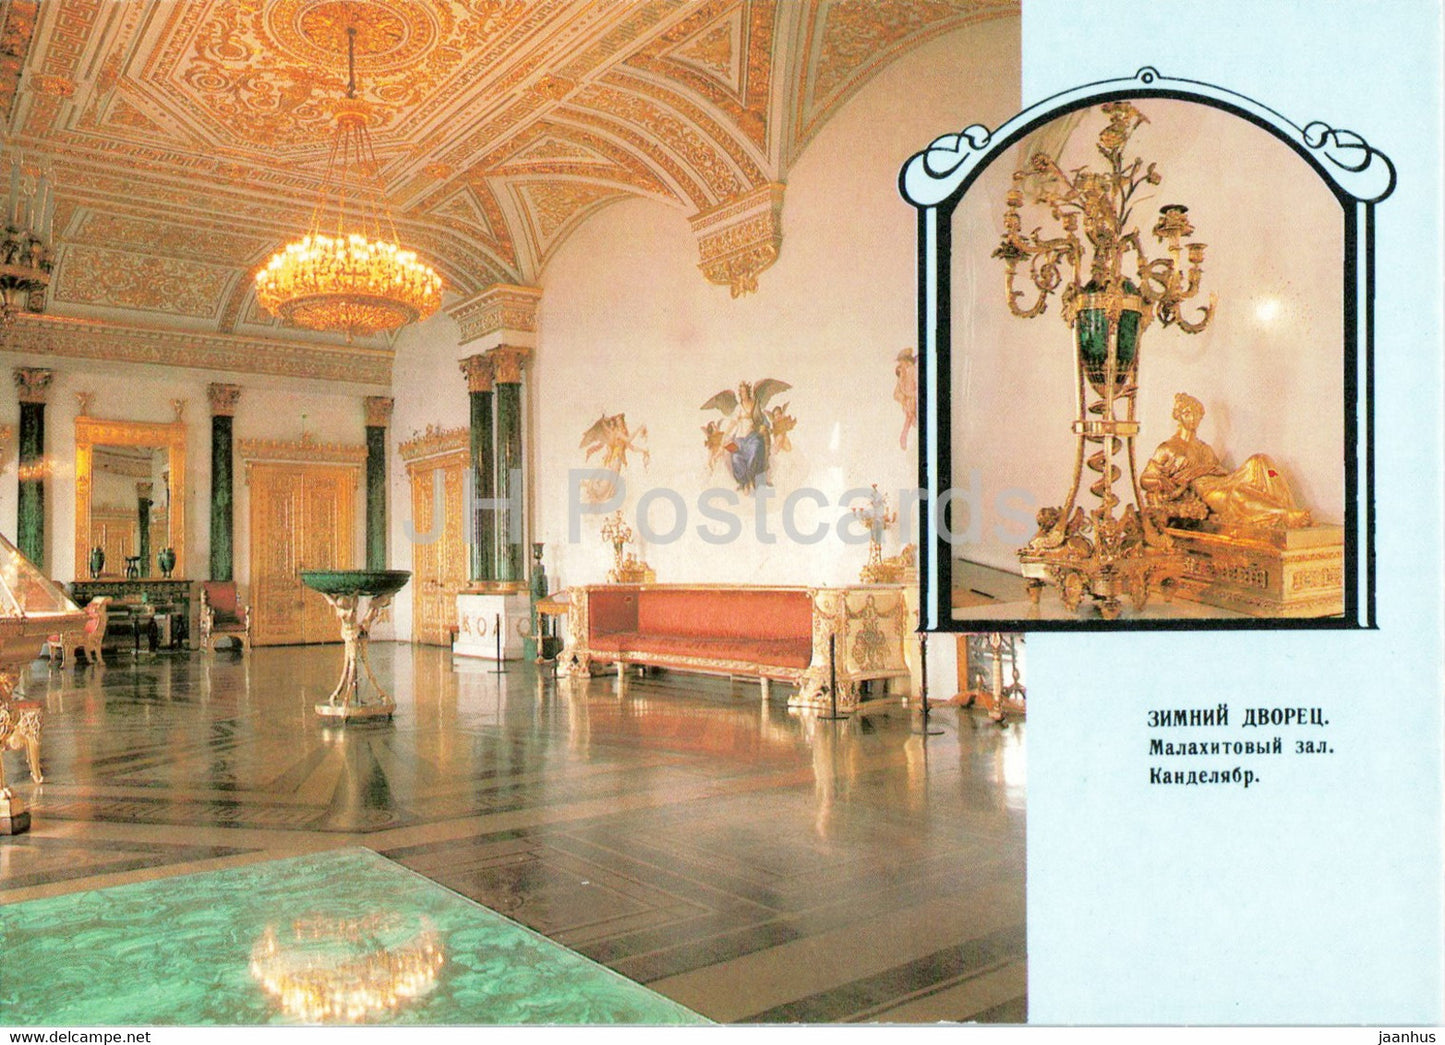 Leningrad - St Petersburg - State Hermitage - Malachite Room - postal stationery - 1989 - Russia USSR - unused - JH Postcards